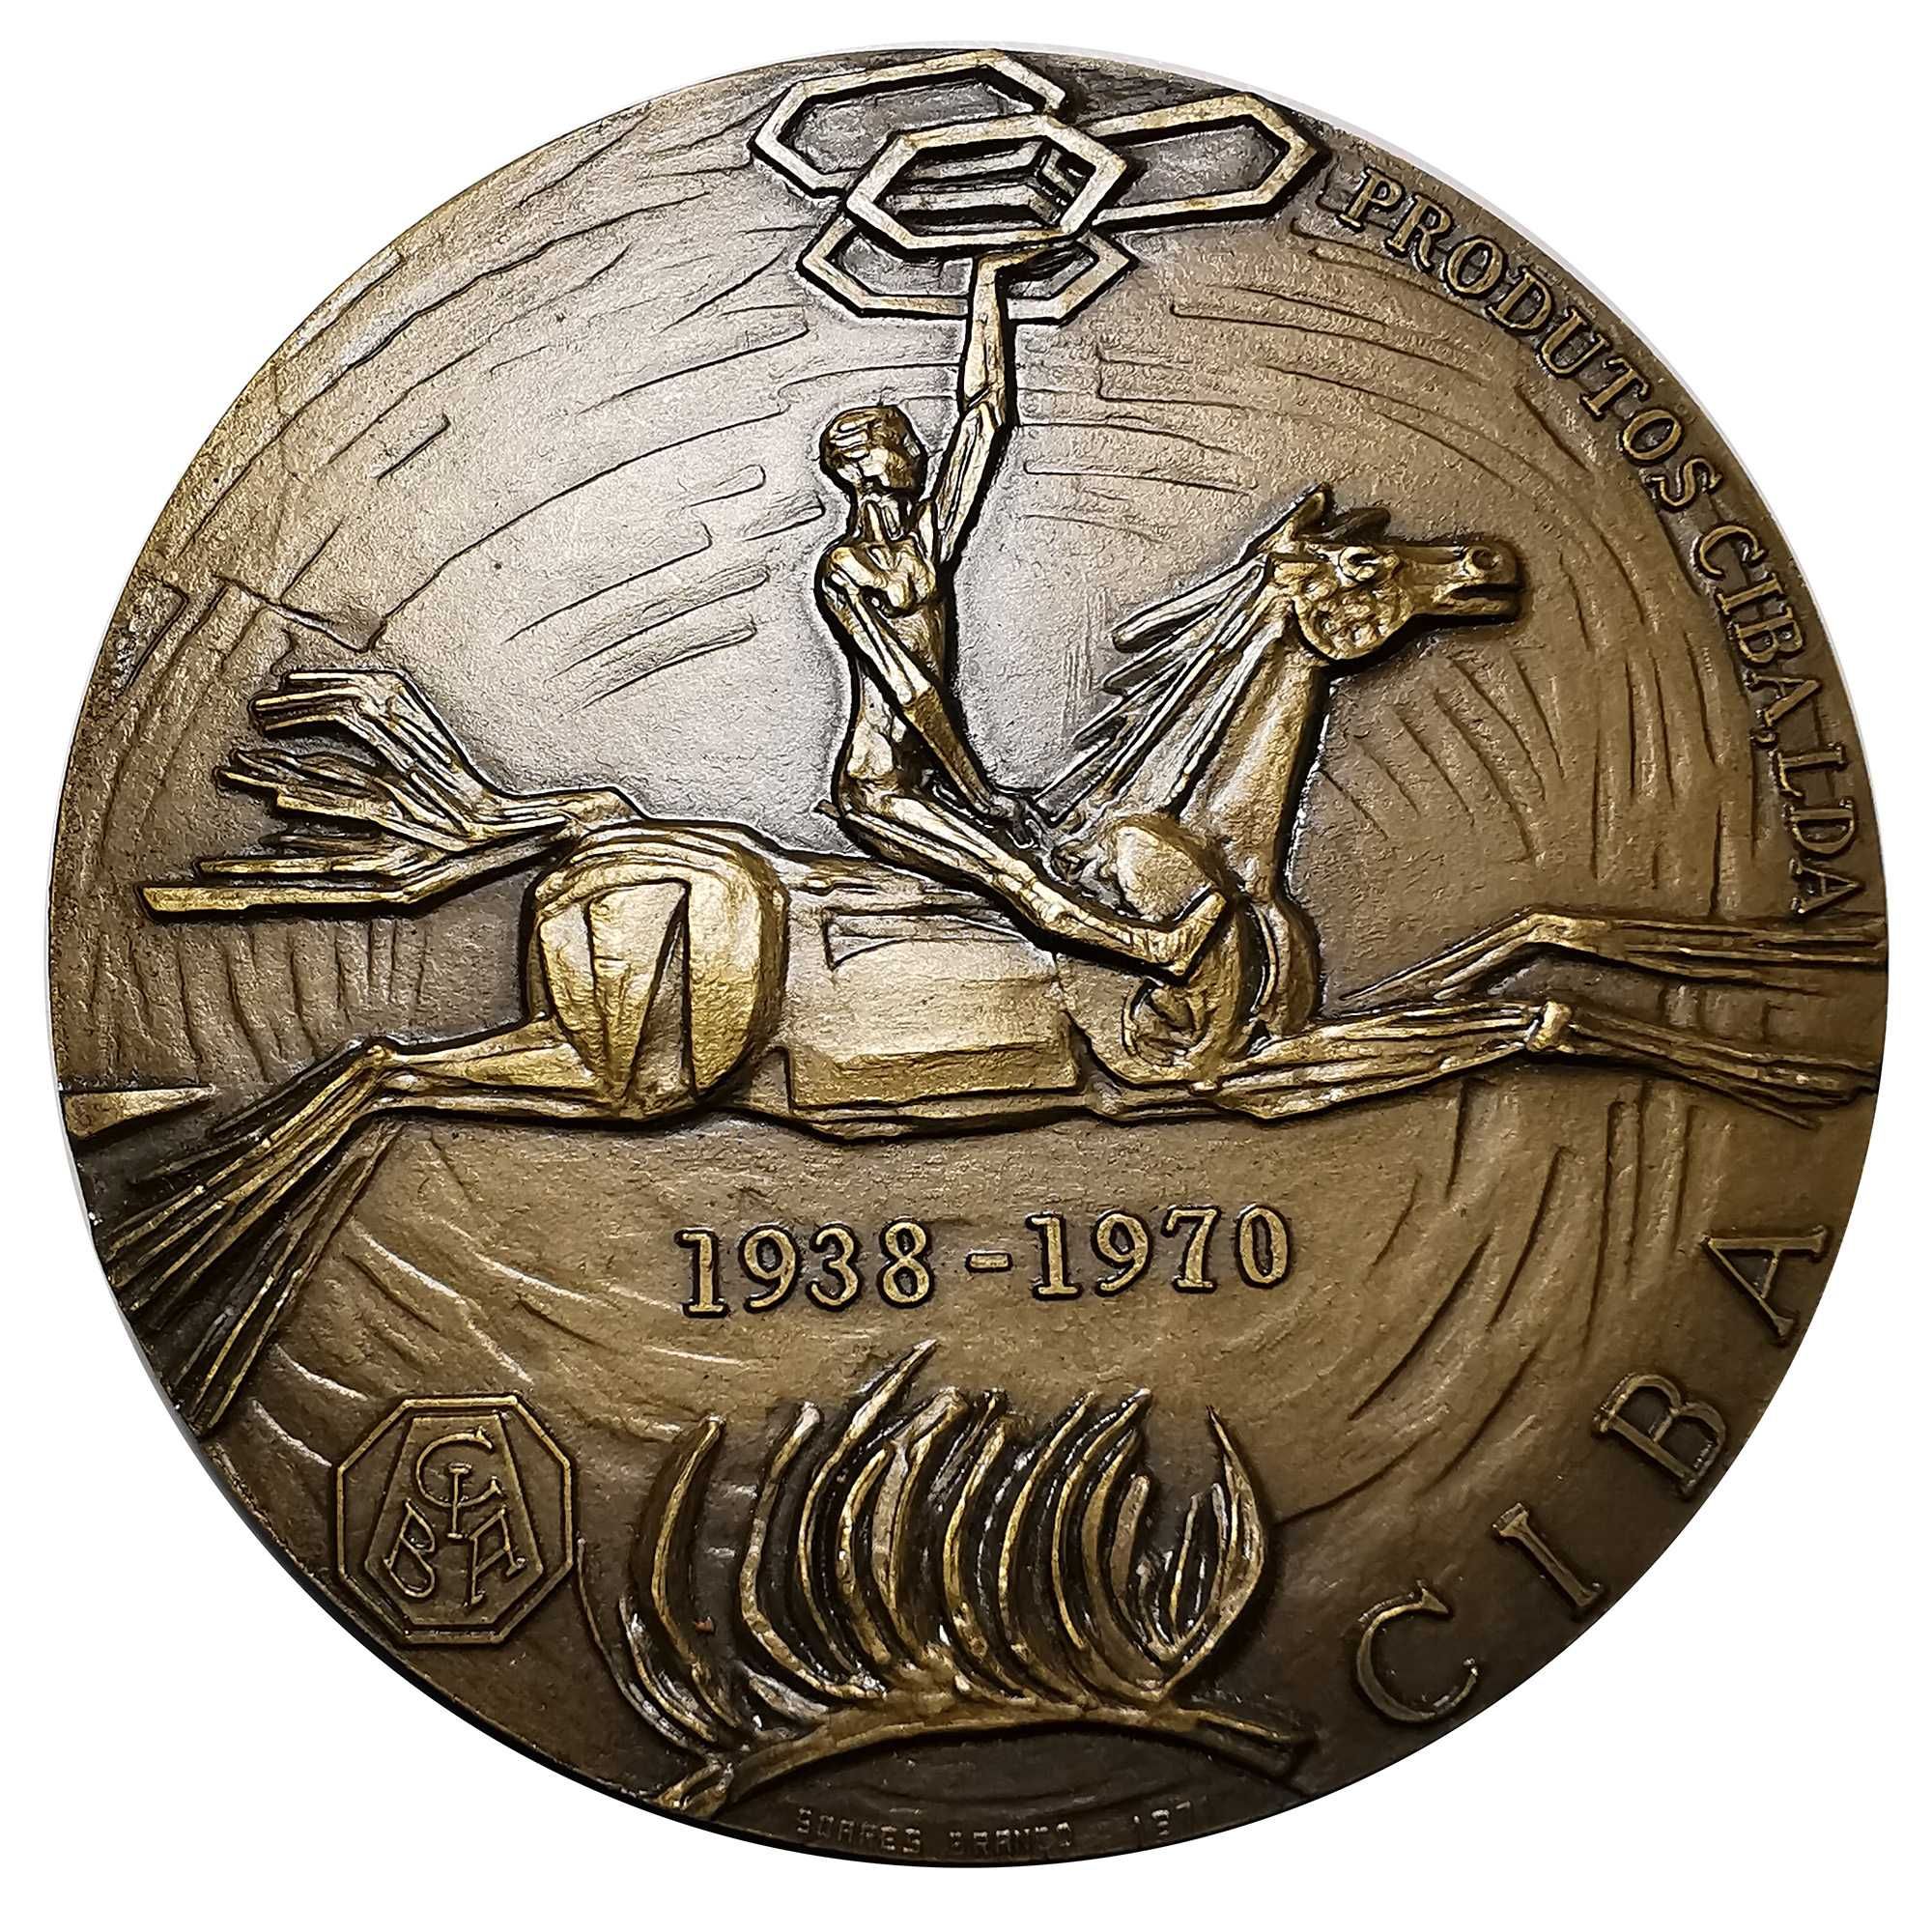 Medalha em Bronze Produtos Ciba Lda, 1938 a 1970